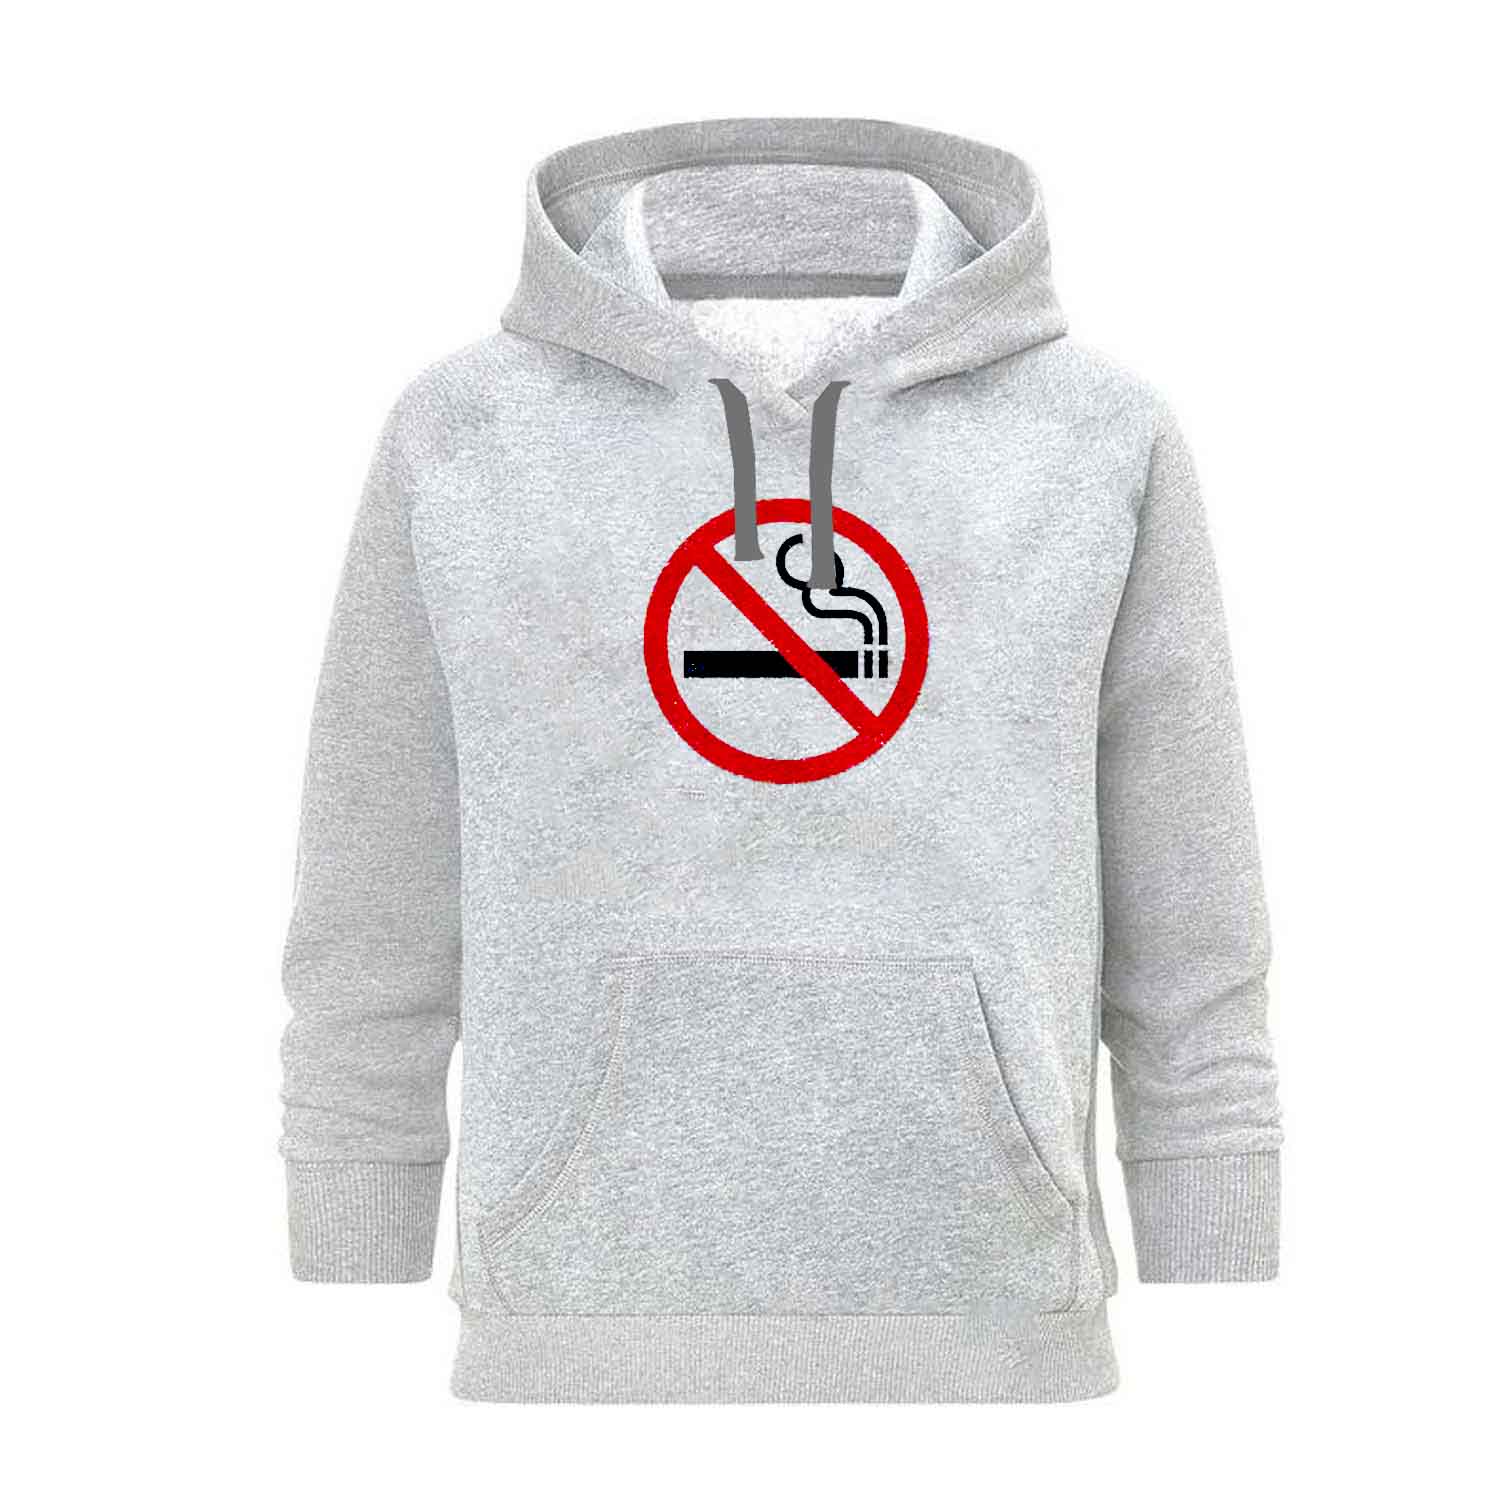 هودی زنانه مدل سیگار ممنوع کد SH14 رنگ طوسی